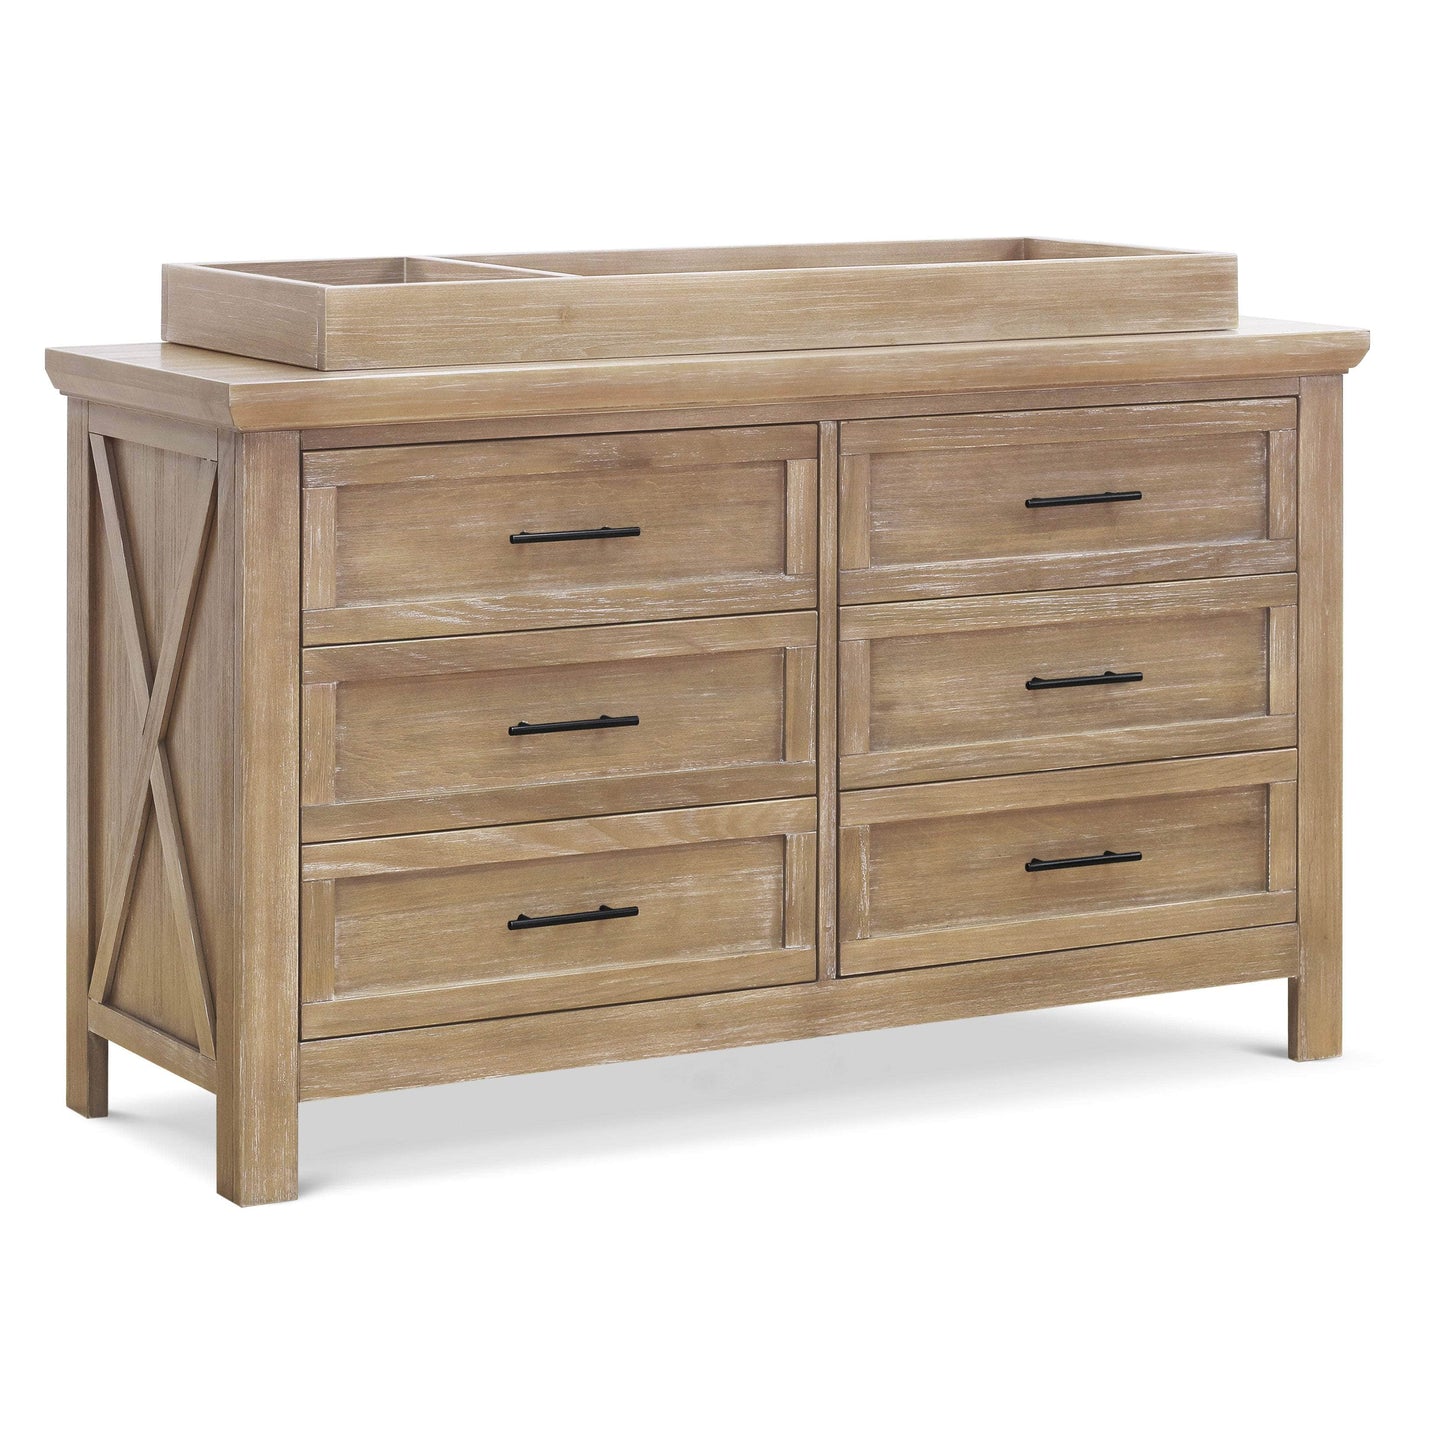 B14516DF,Emory Farmhouse 6-Drawer Dresser in Driftwood